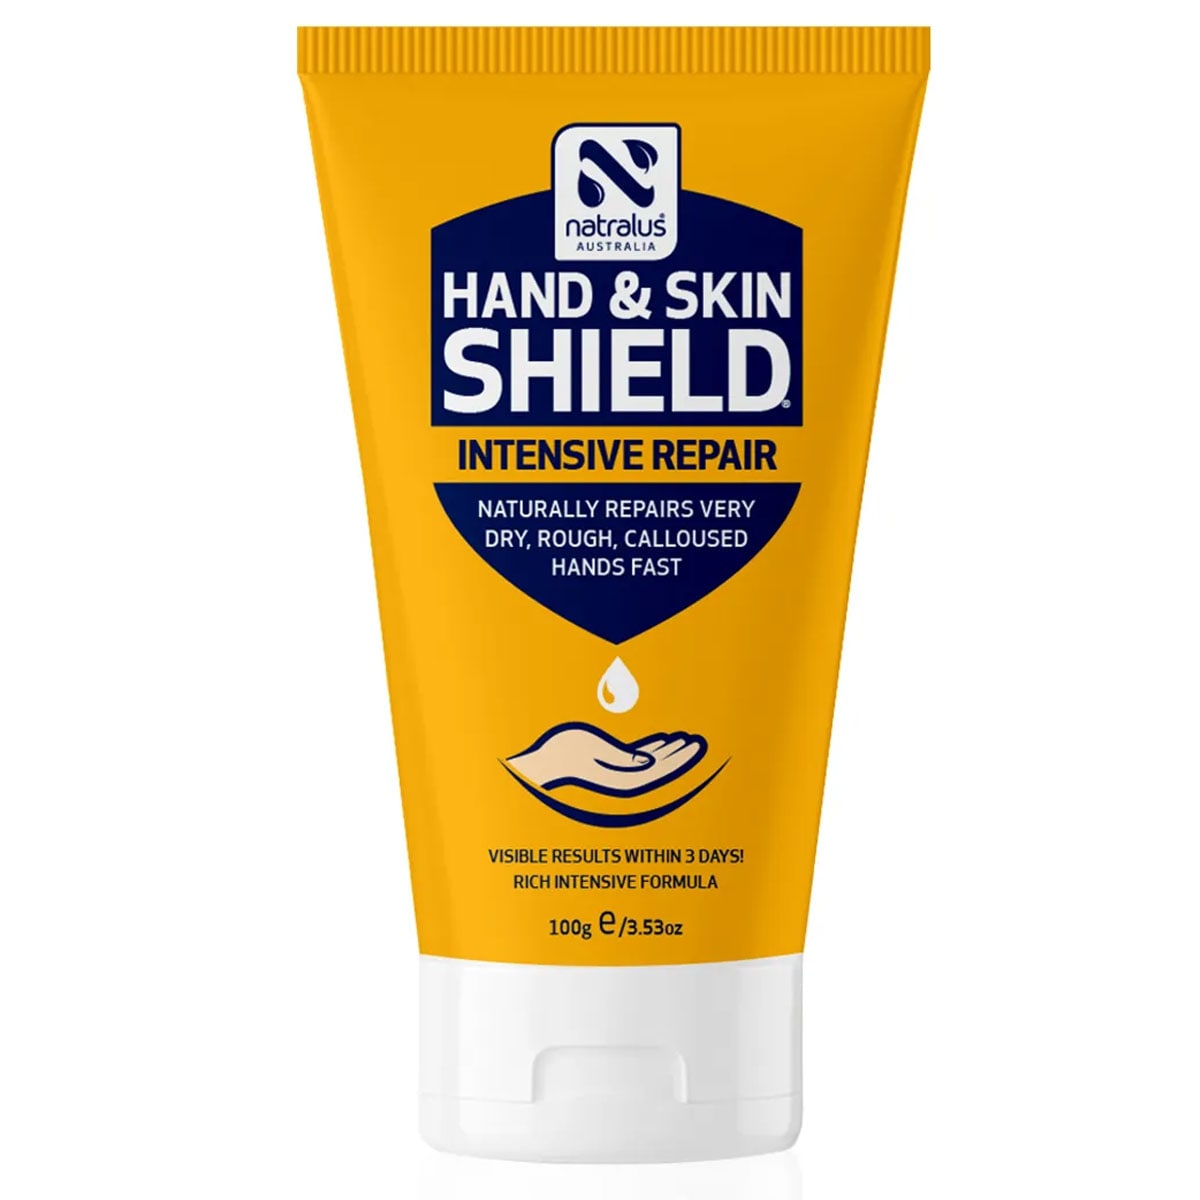 Natralus Hand & Skin Shield Intensive Repair 100g